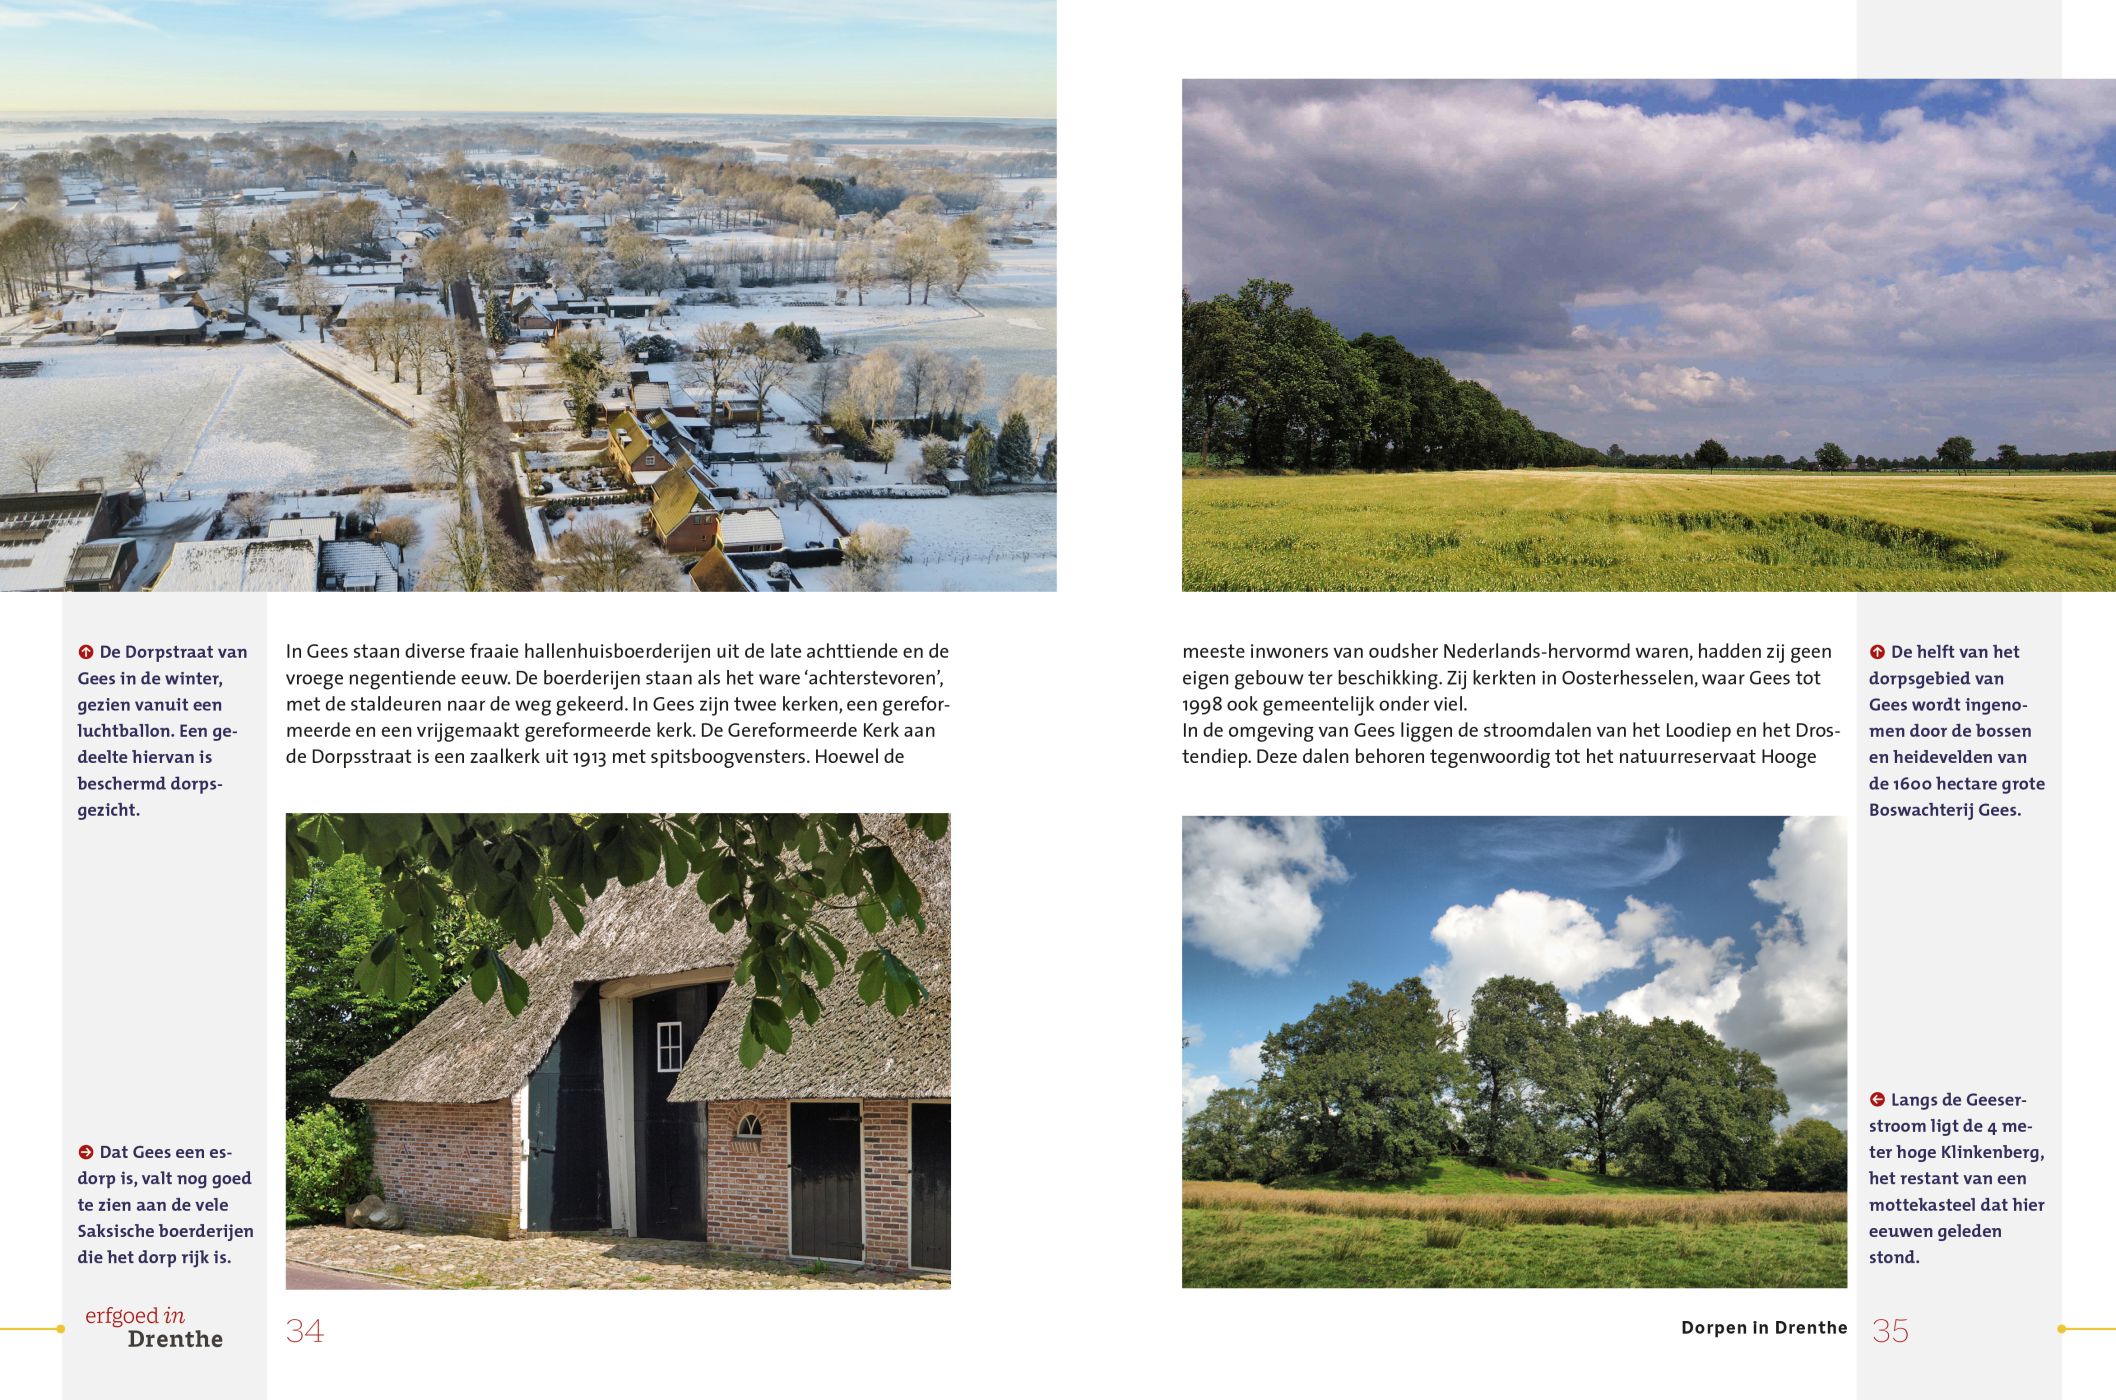 Inkijkexemplaar van het boek: <em>Erfgoed in Drenthe. Esdorpen en brinken</em> - © Uitgeverij Matrijs